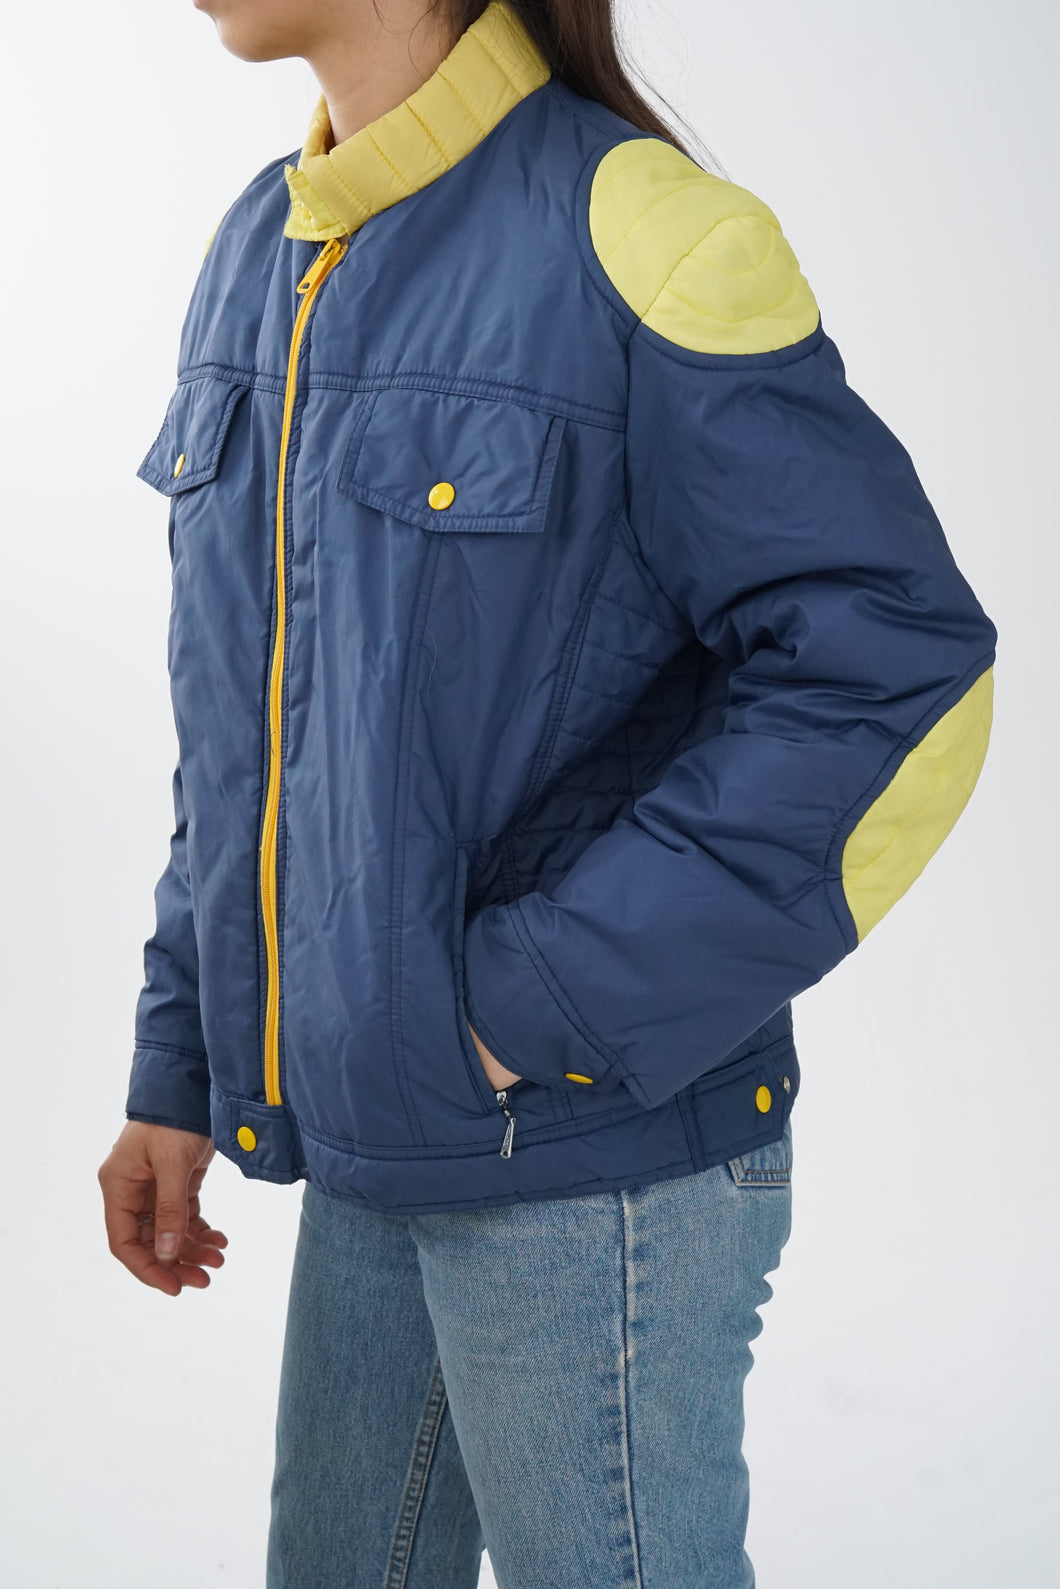 Manteau léger vintage 70s Ski Down bleu et jaune unisex M-L